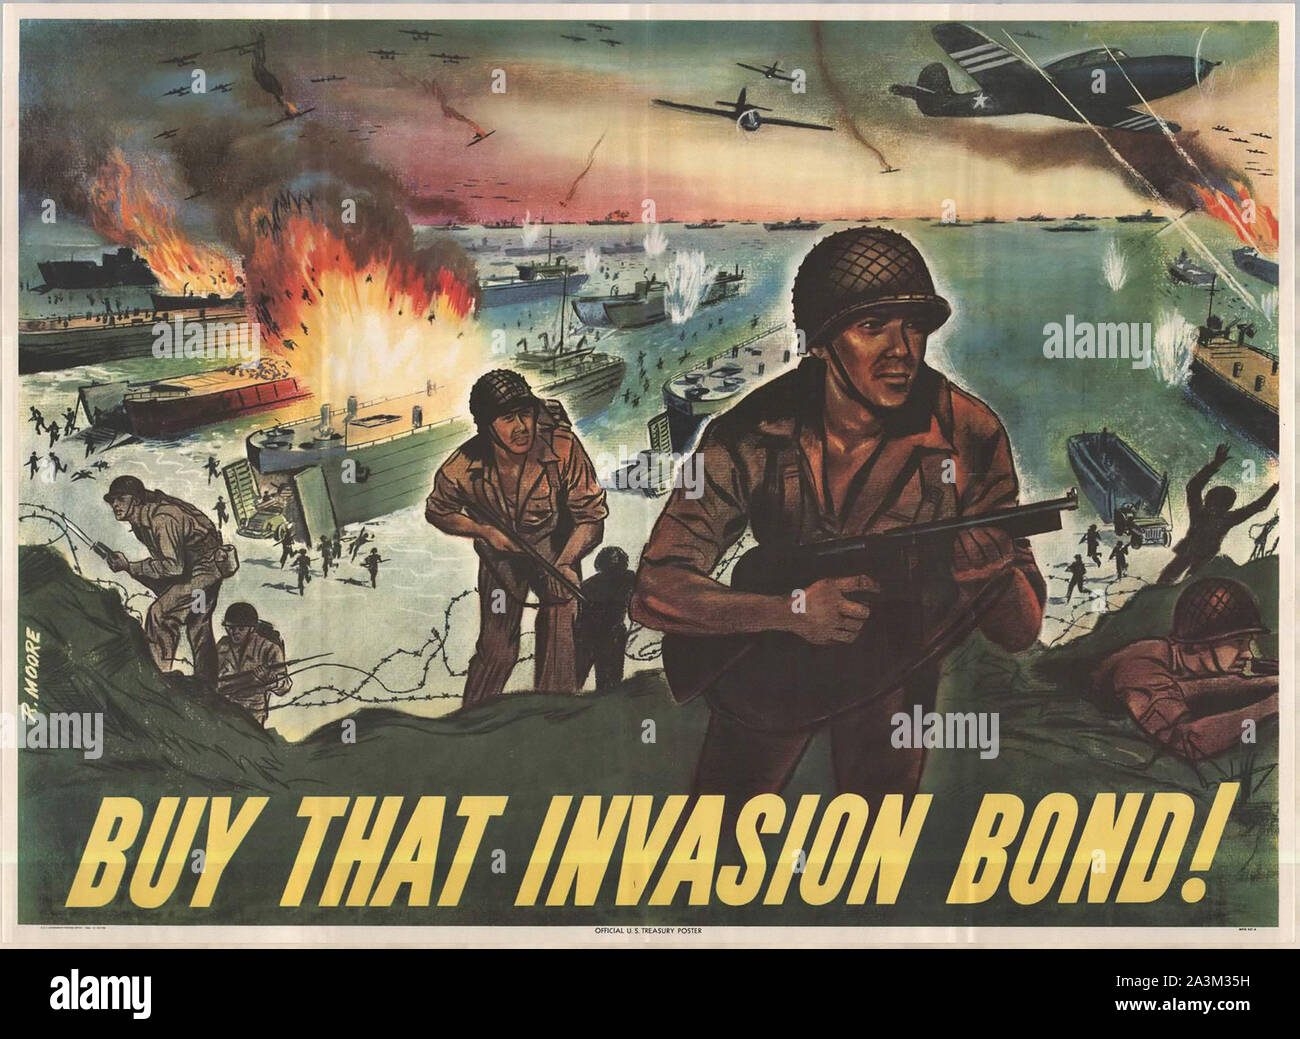 Kaufen, dass die Invasion Bond! Normandie Invasion - Vintage US-Propaganda Poster Stockfoto